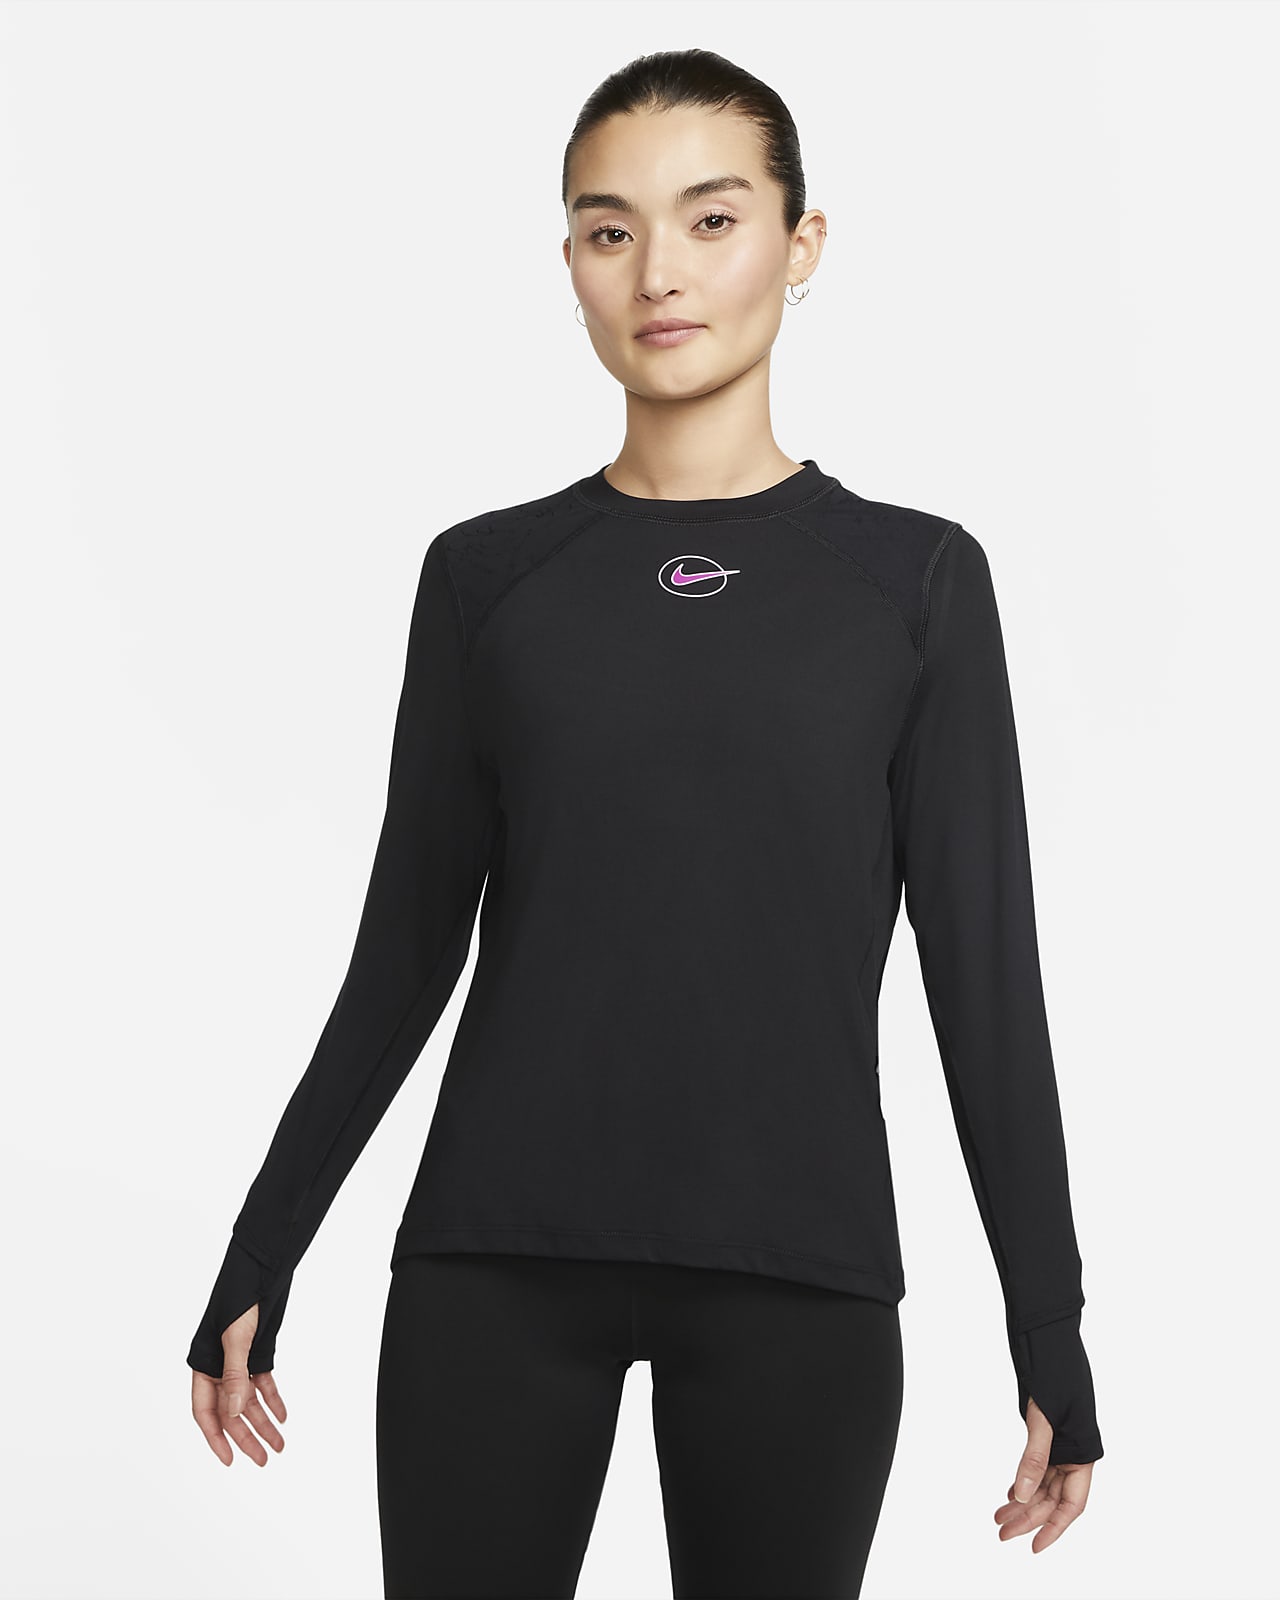 redden omverwerping helemaal Nike Dri-FIT Icon Clash Women's Long-Sleeve Running Top. Nike ID